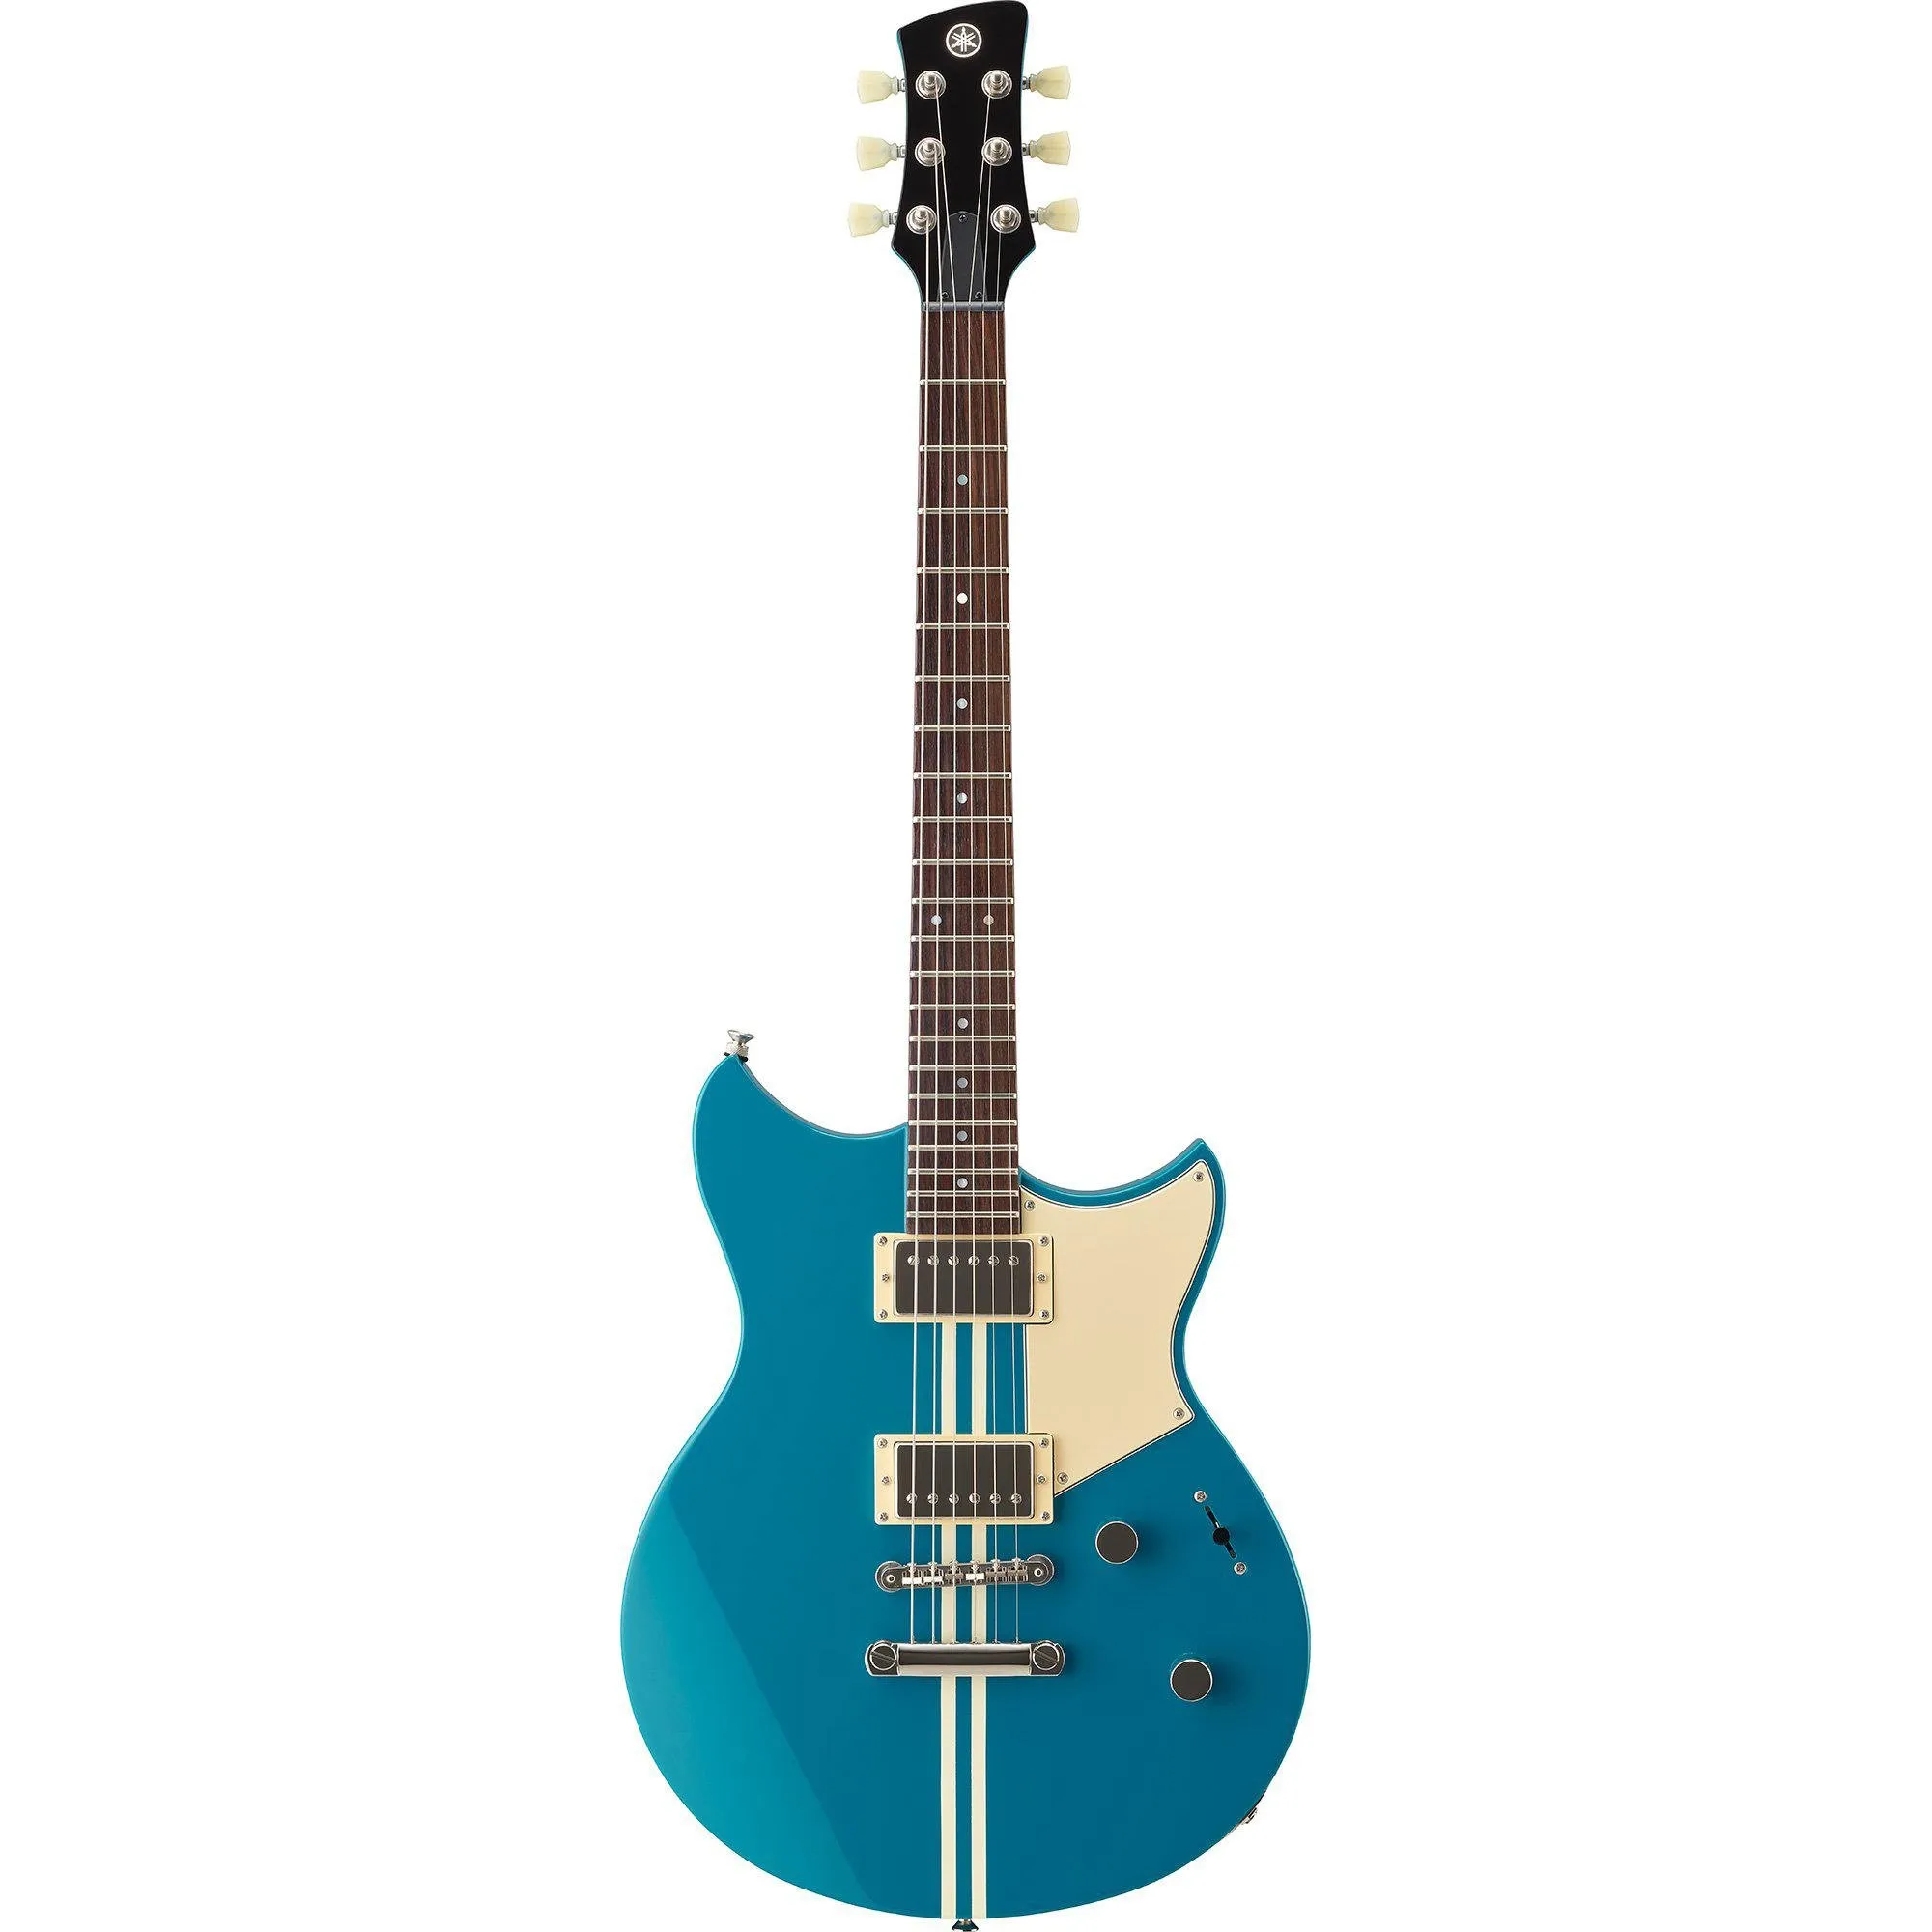 Guitarra Yamaha Revstar RSE 20 Swift Blue por 4.699,99 à vista no boleto/pix ou parcele em até 12x sem juros. Compre na loja Mundomax!